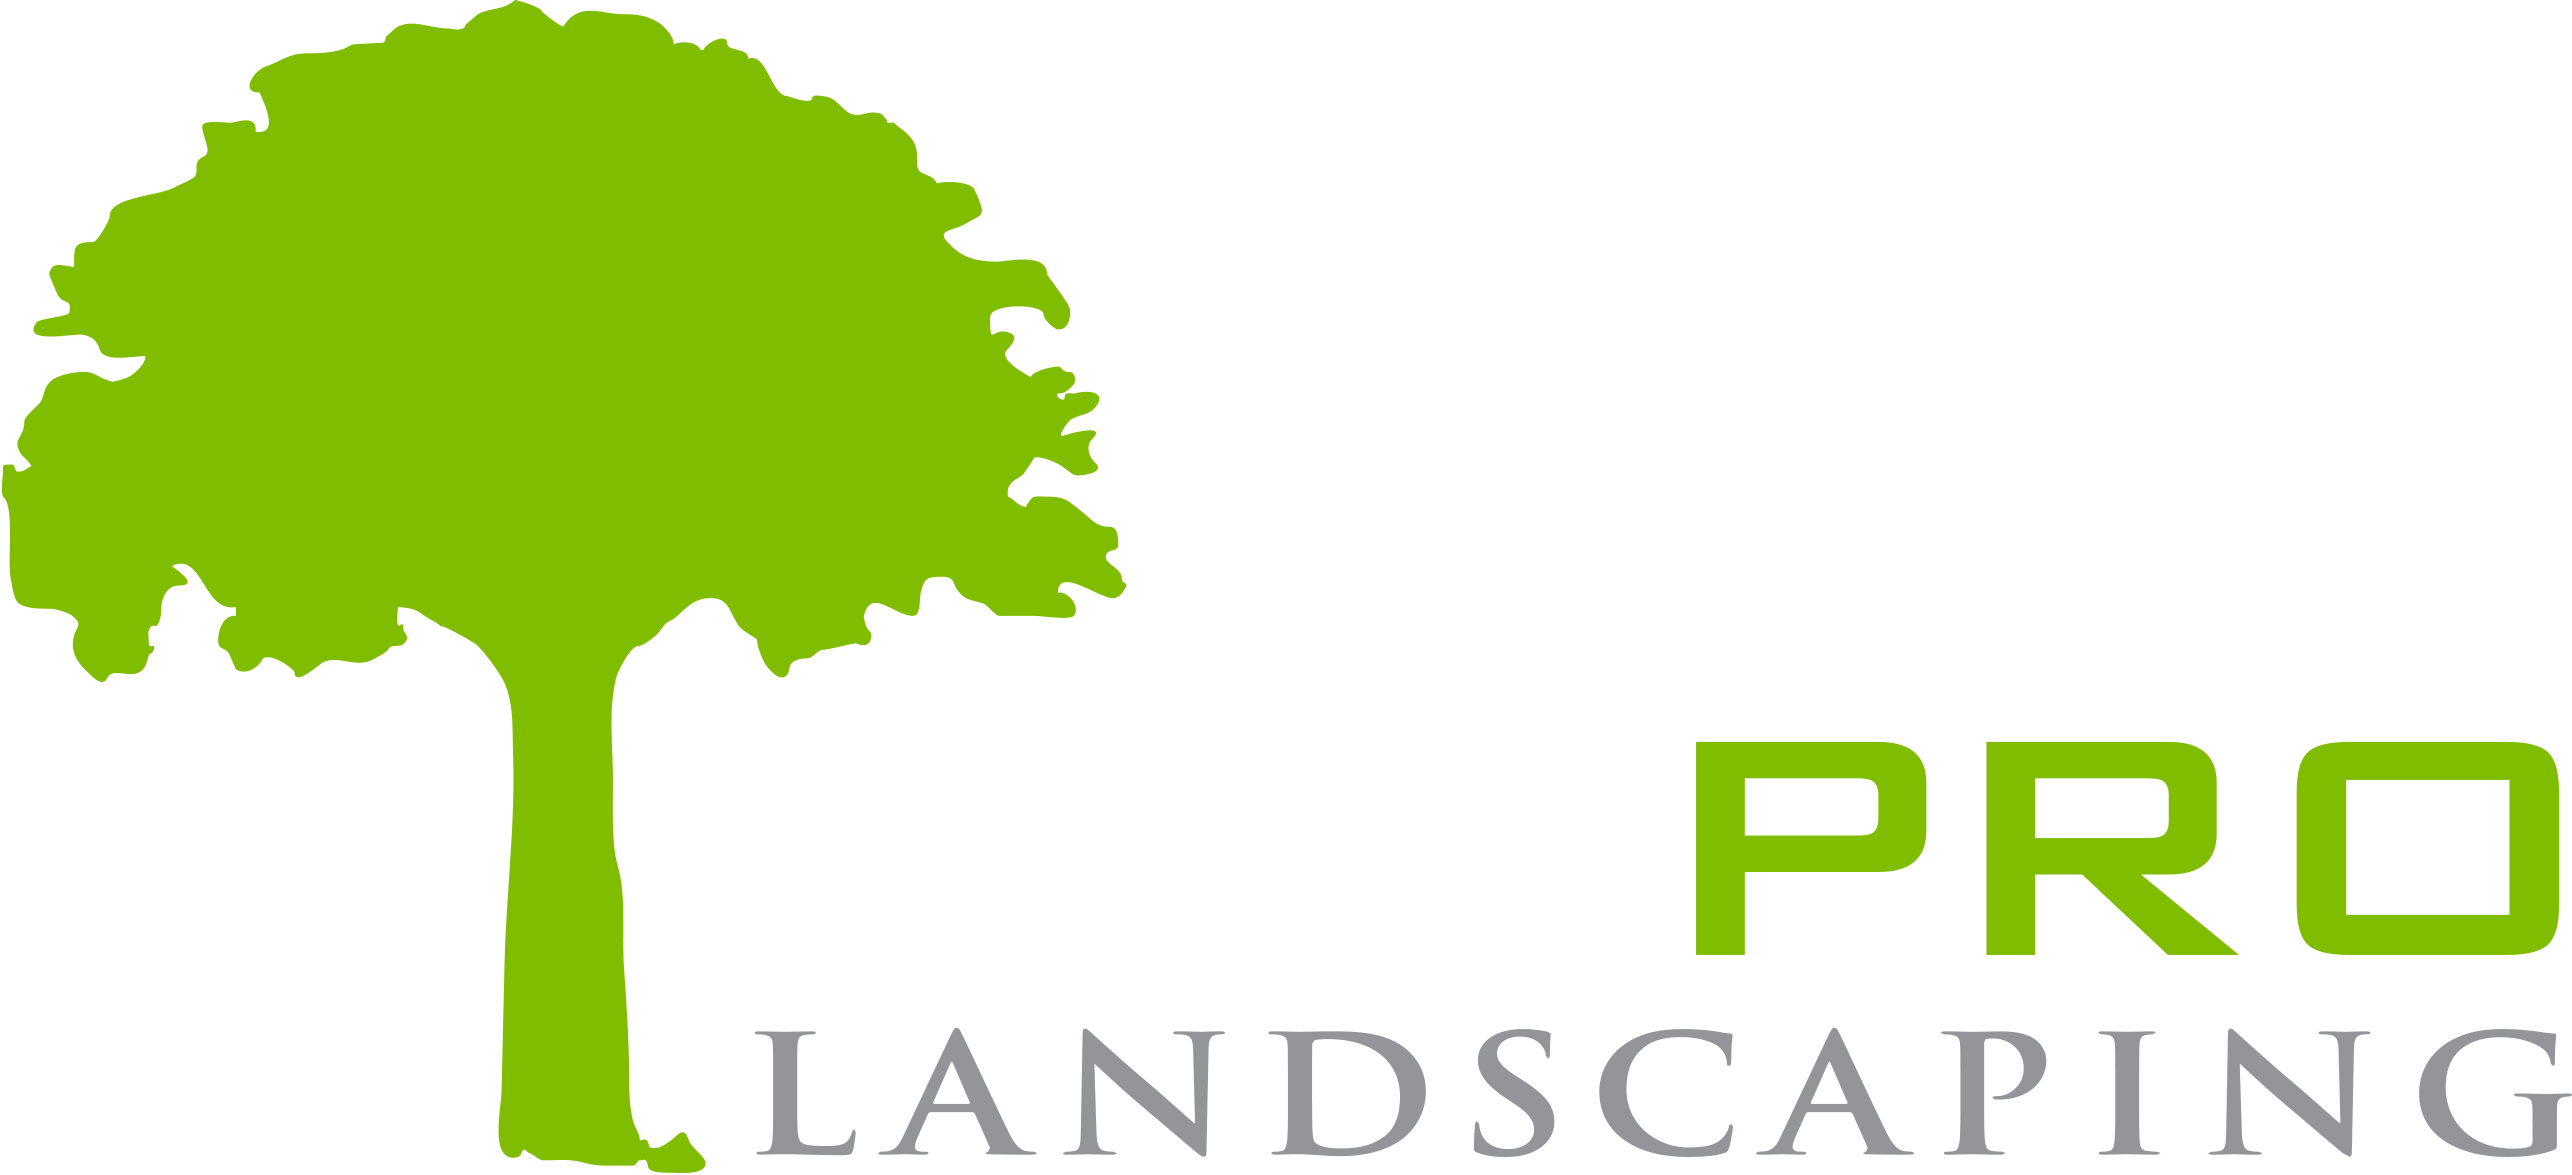 Turf pro landscaping . Landscape clipart southwest landscape